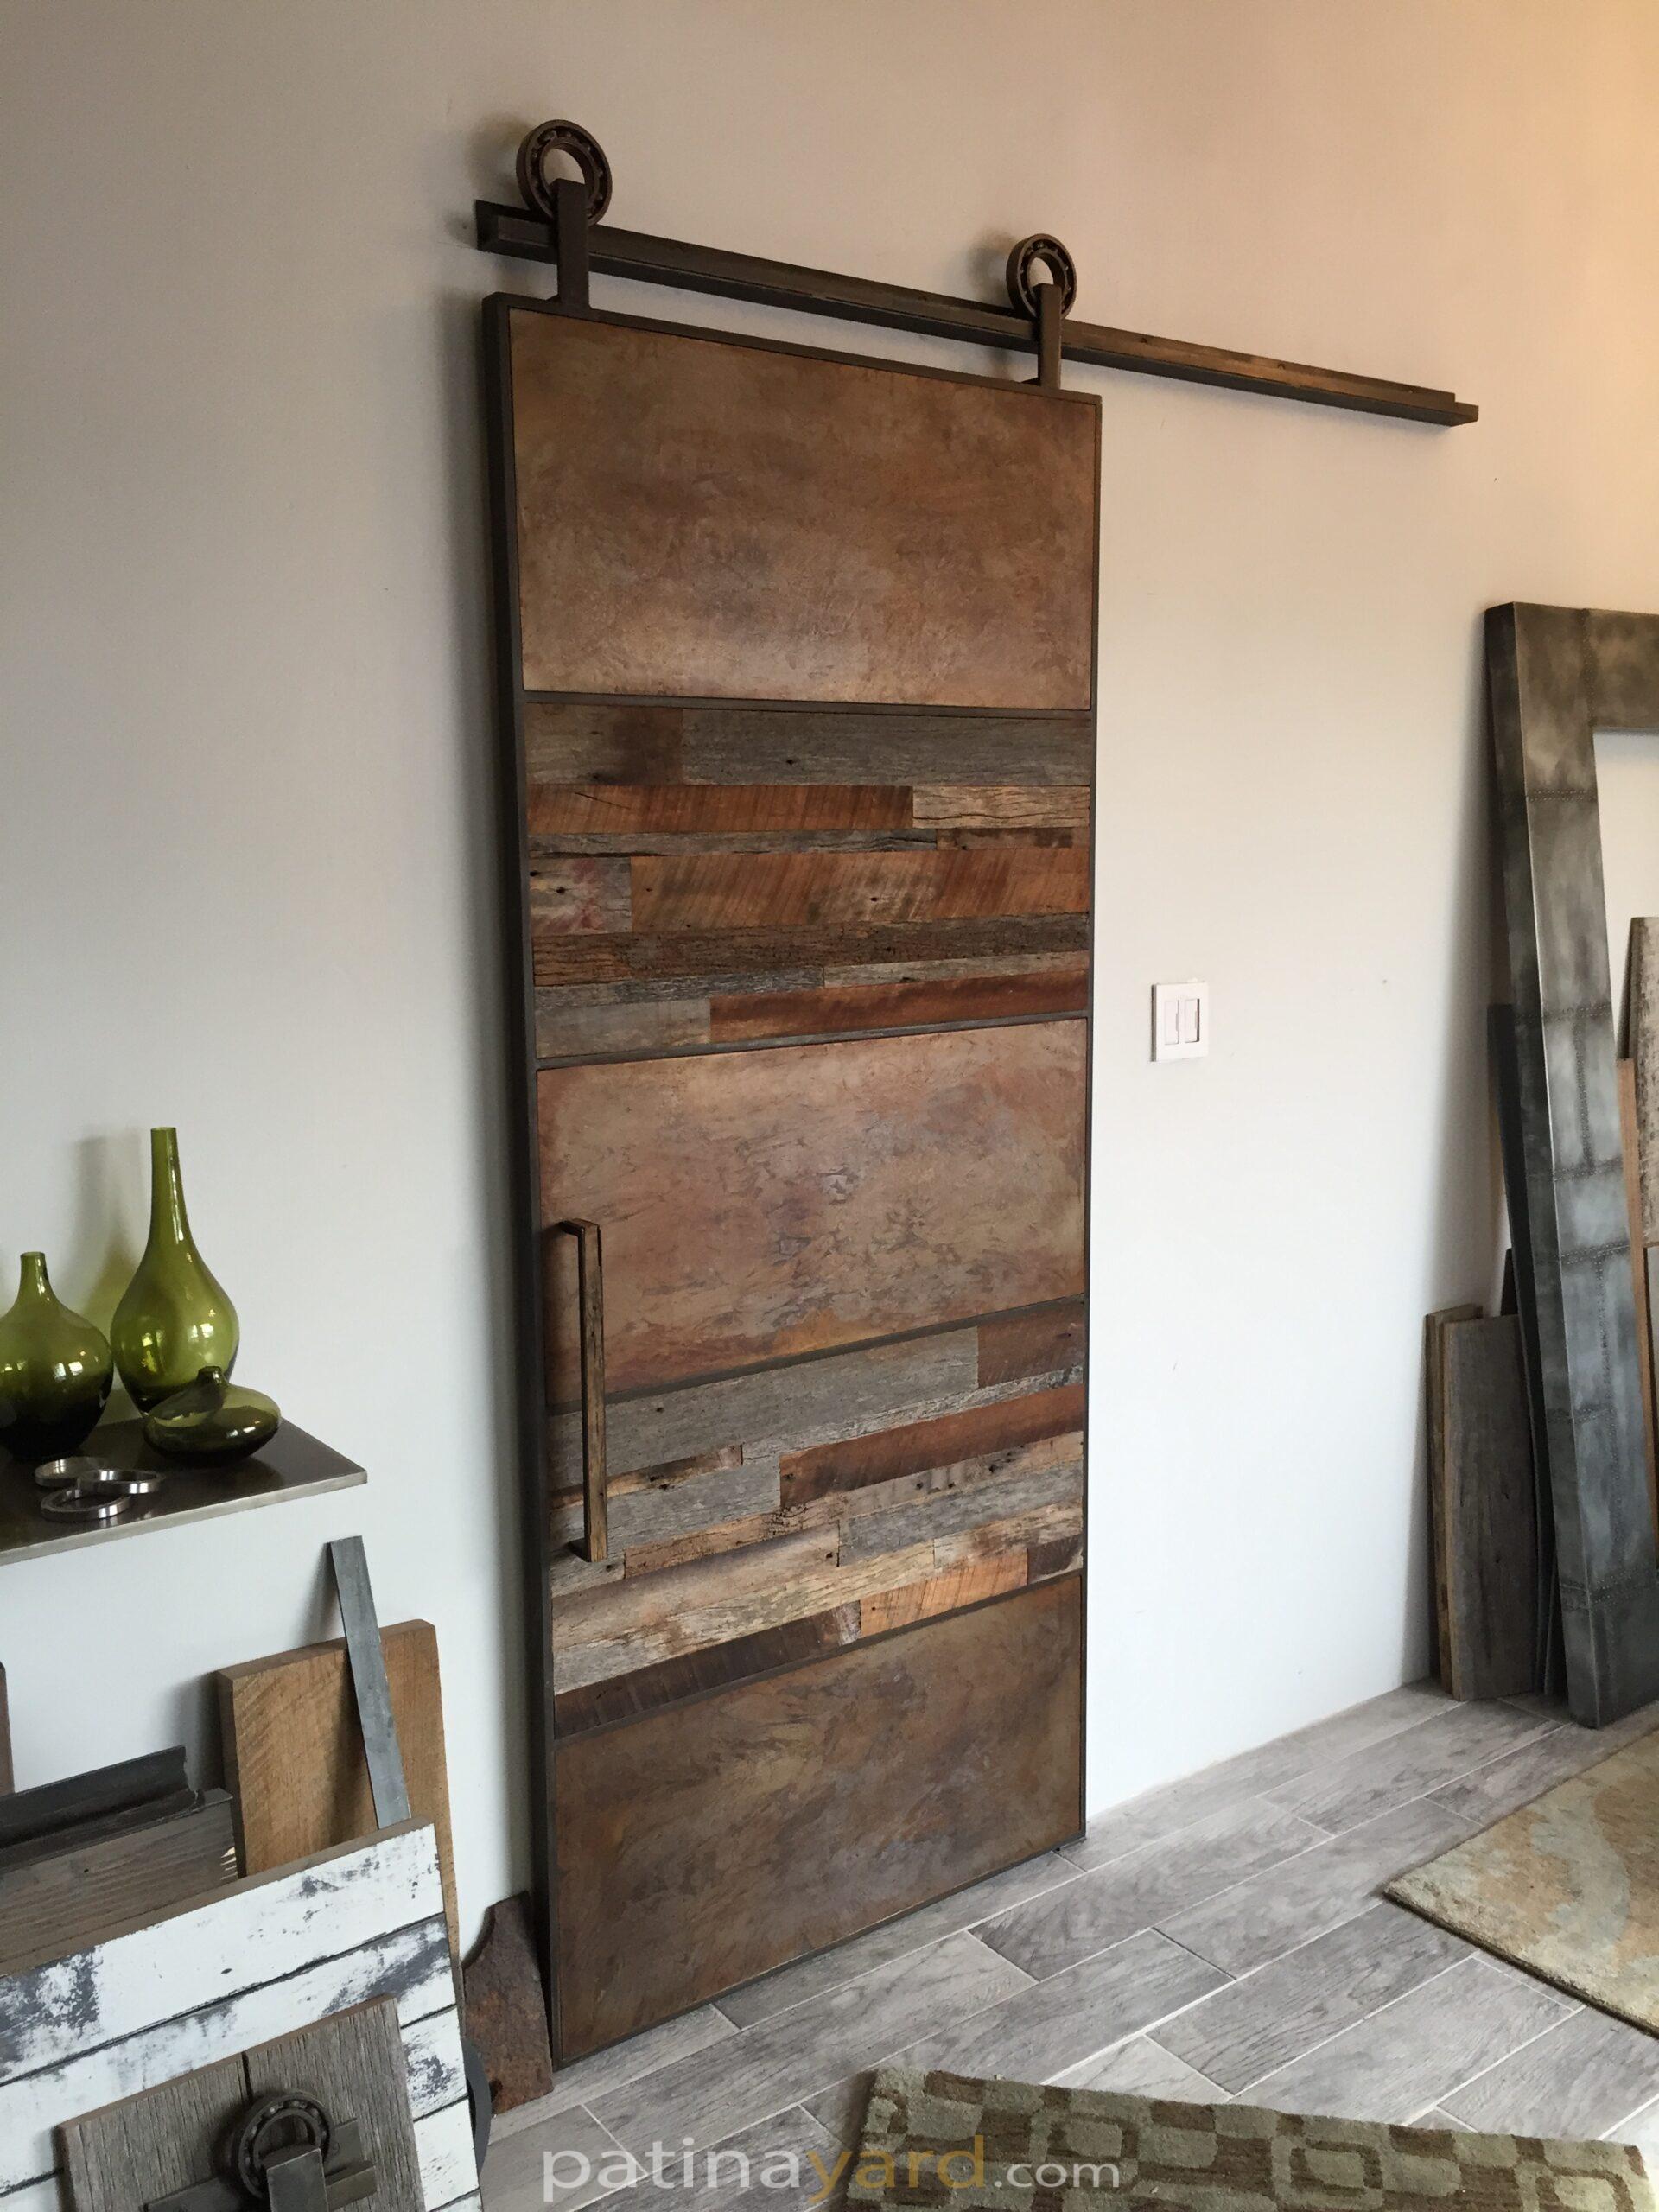 Reclaimed wood and metal barn door